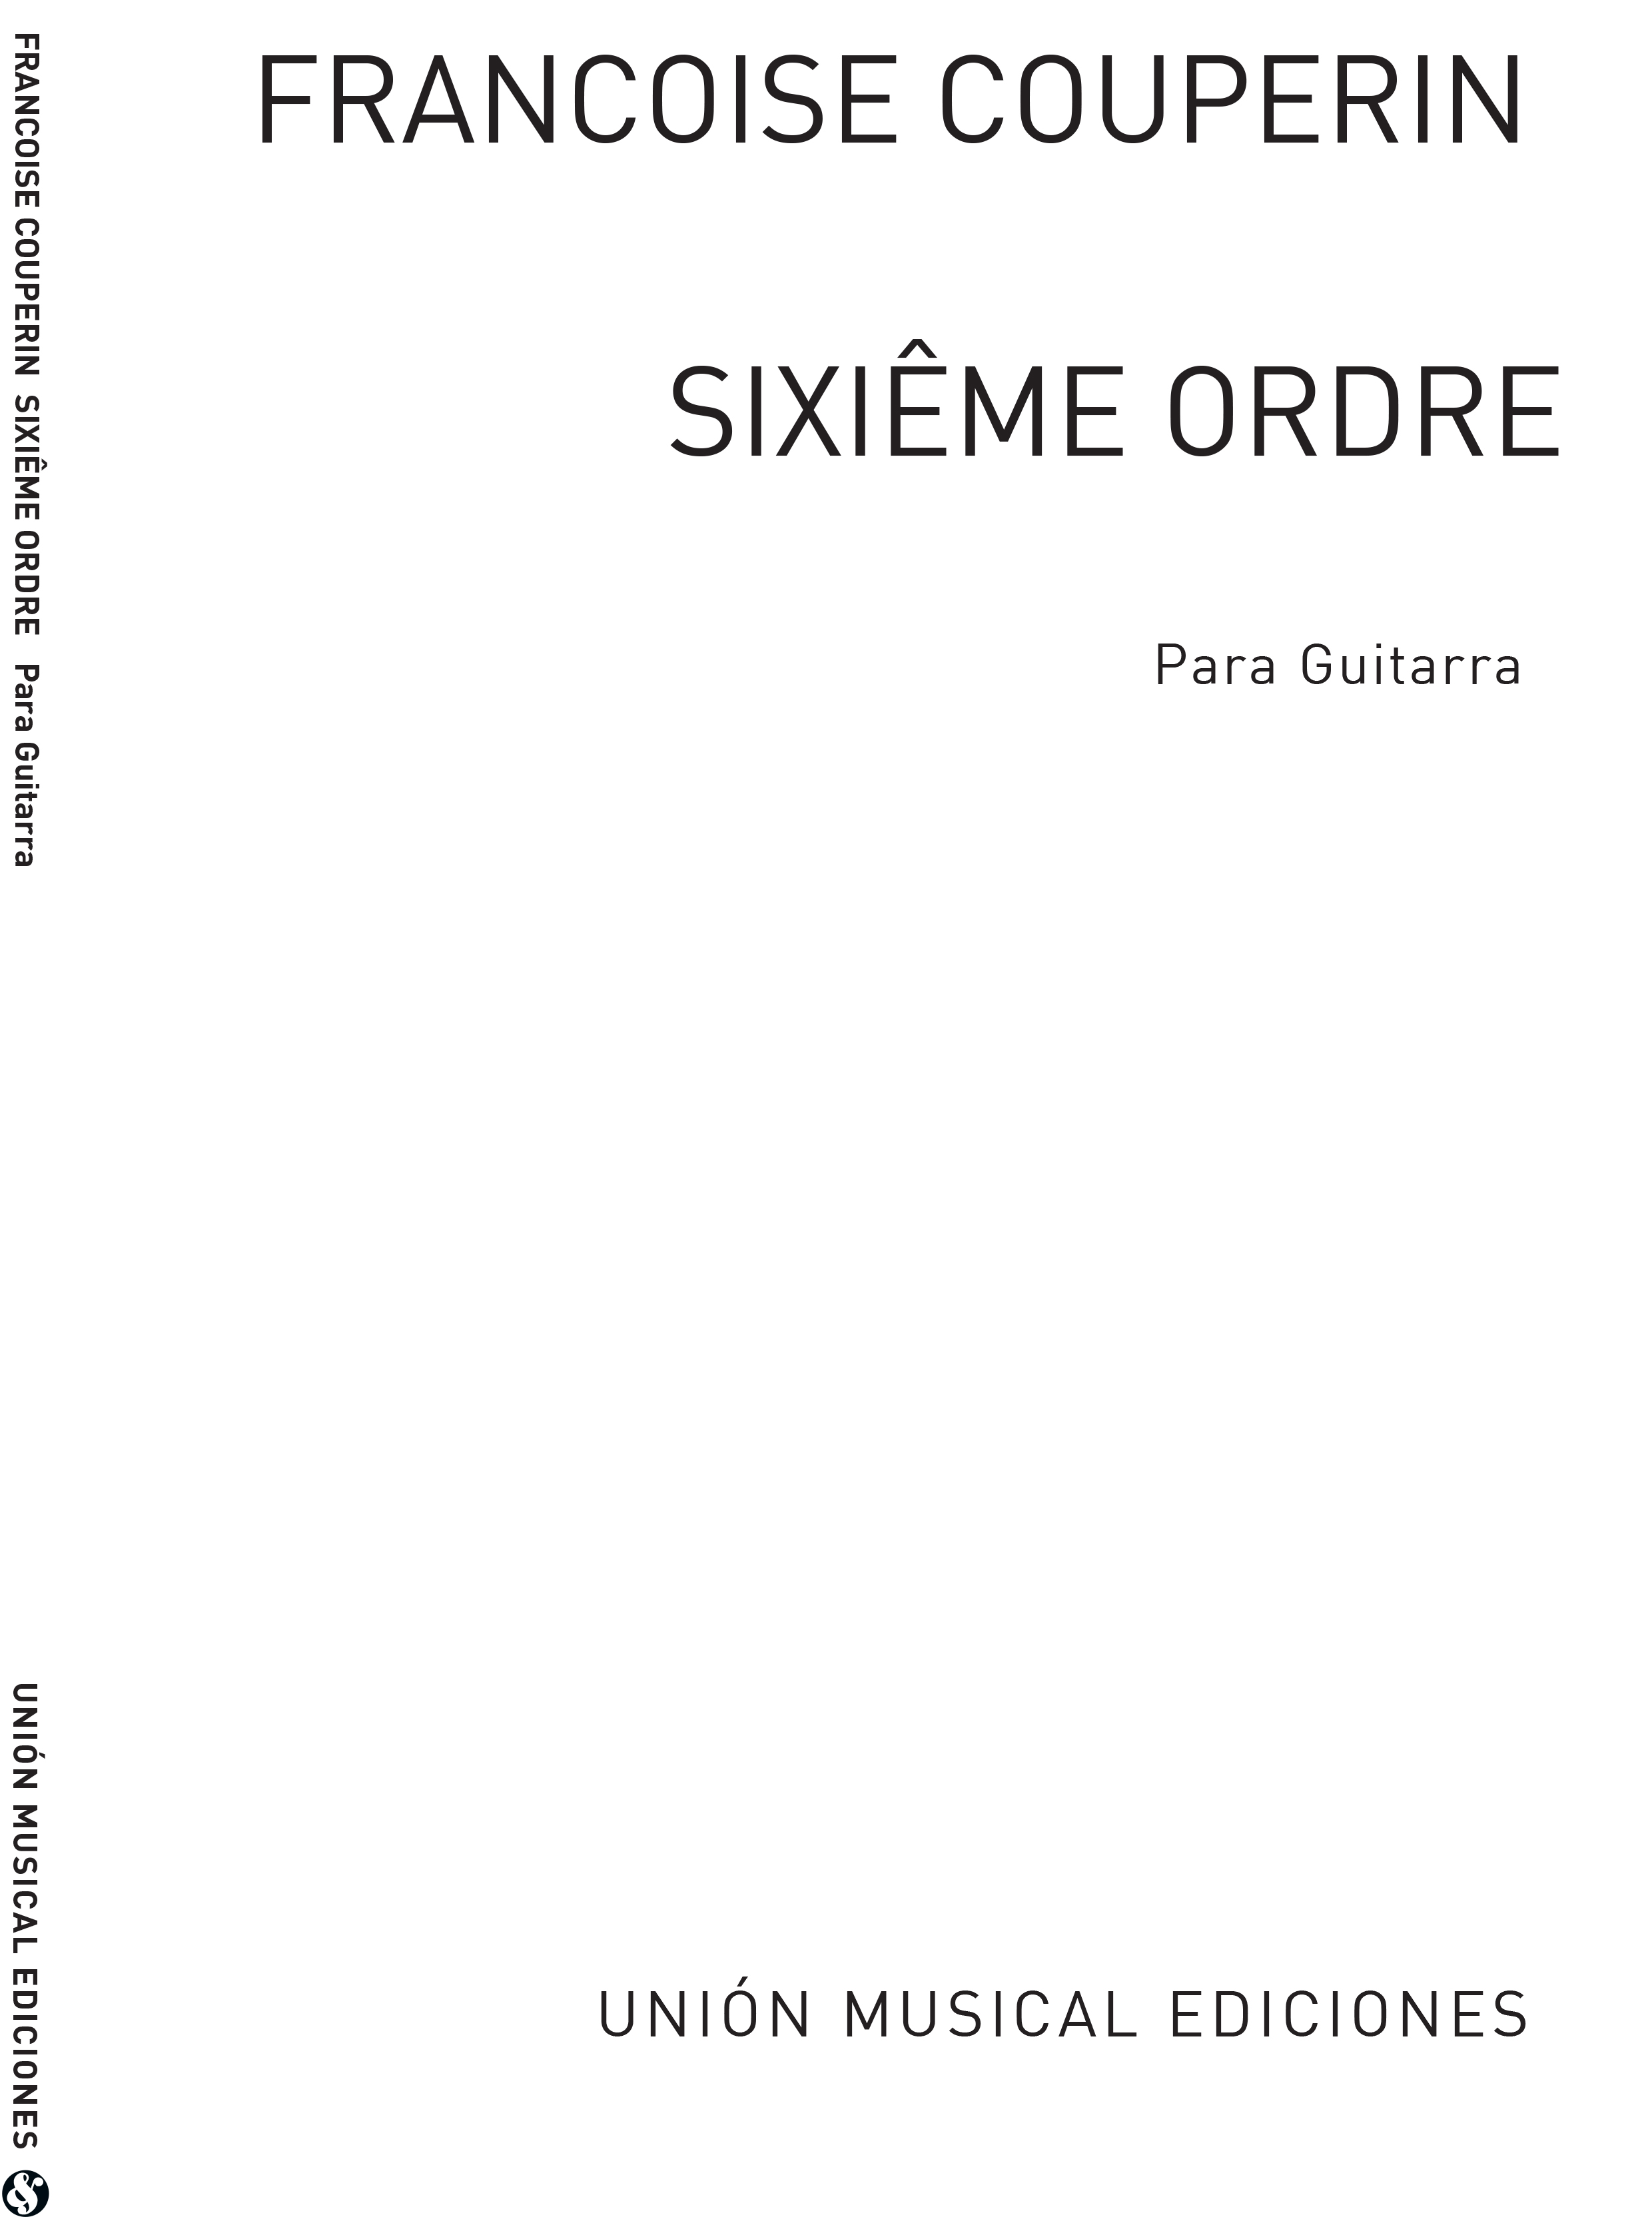 François Couperin: Sixieme Ordre Suite: Guitar: Instrumental Album